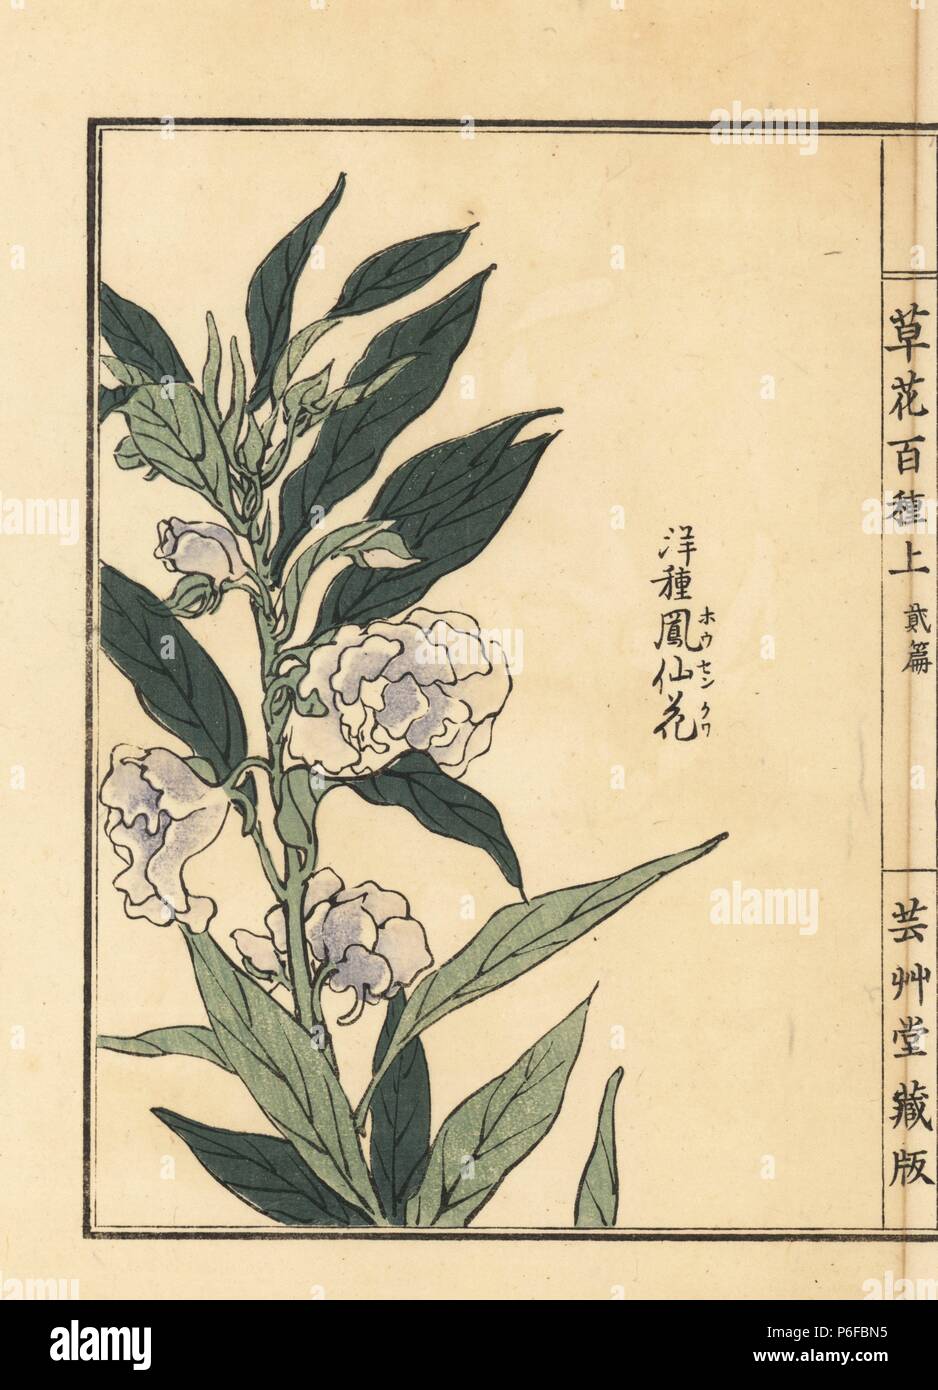 Housenka or garden balsam, Impatiens balsamina. Handcoloured woodblock print by Kono Bairei from Kusa Bana Hyakushu (One Hundred Varieties of Flowers), Tokyo, Yamada, 1901. Stock Photo